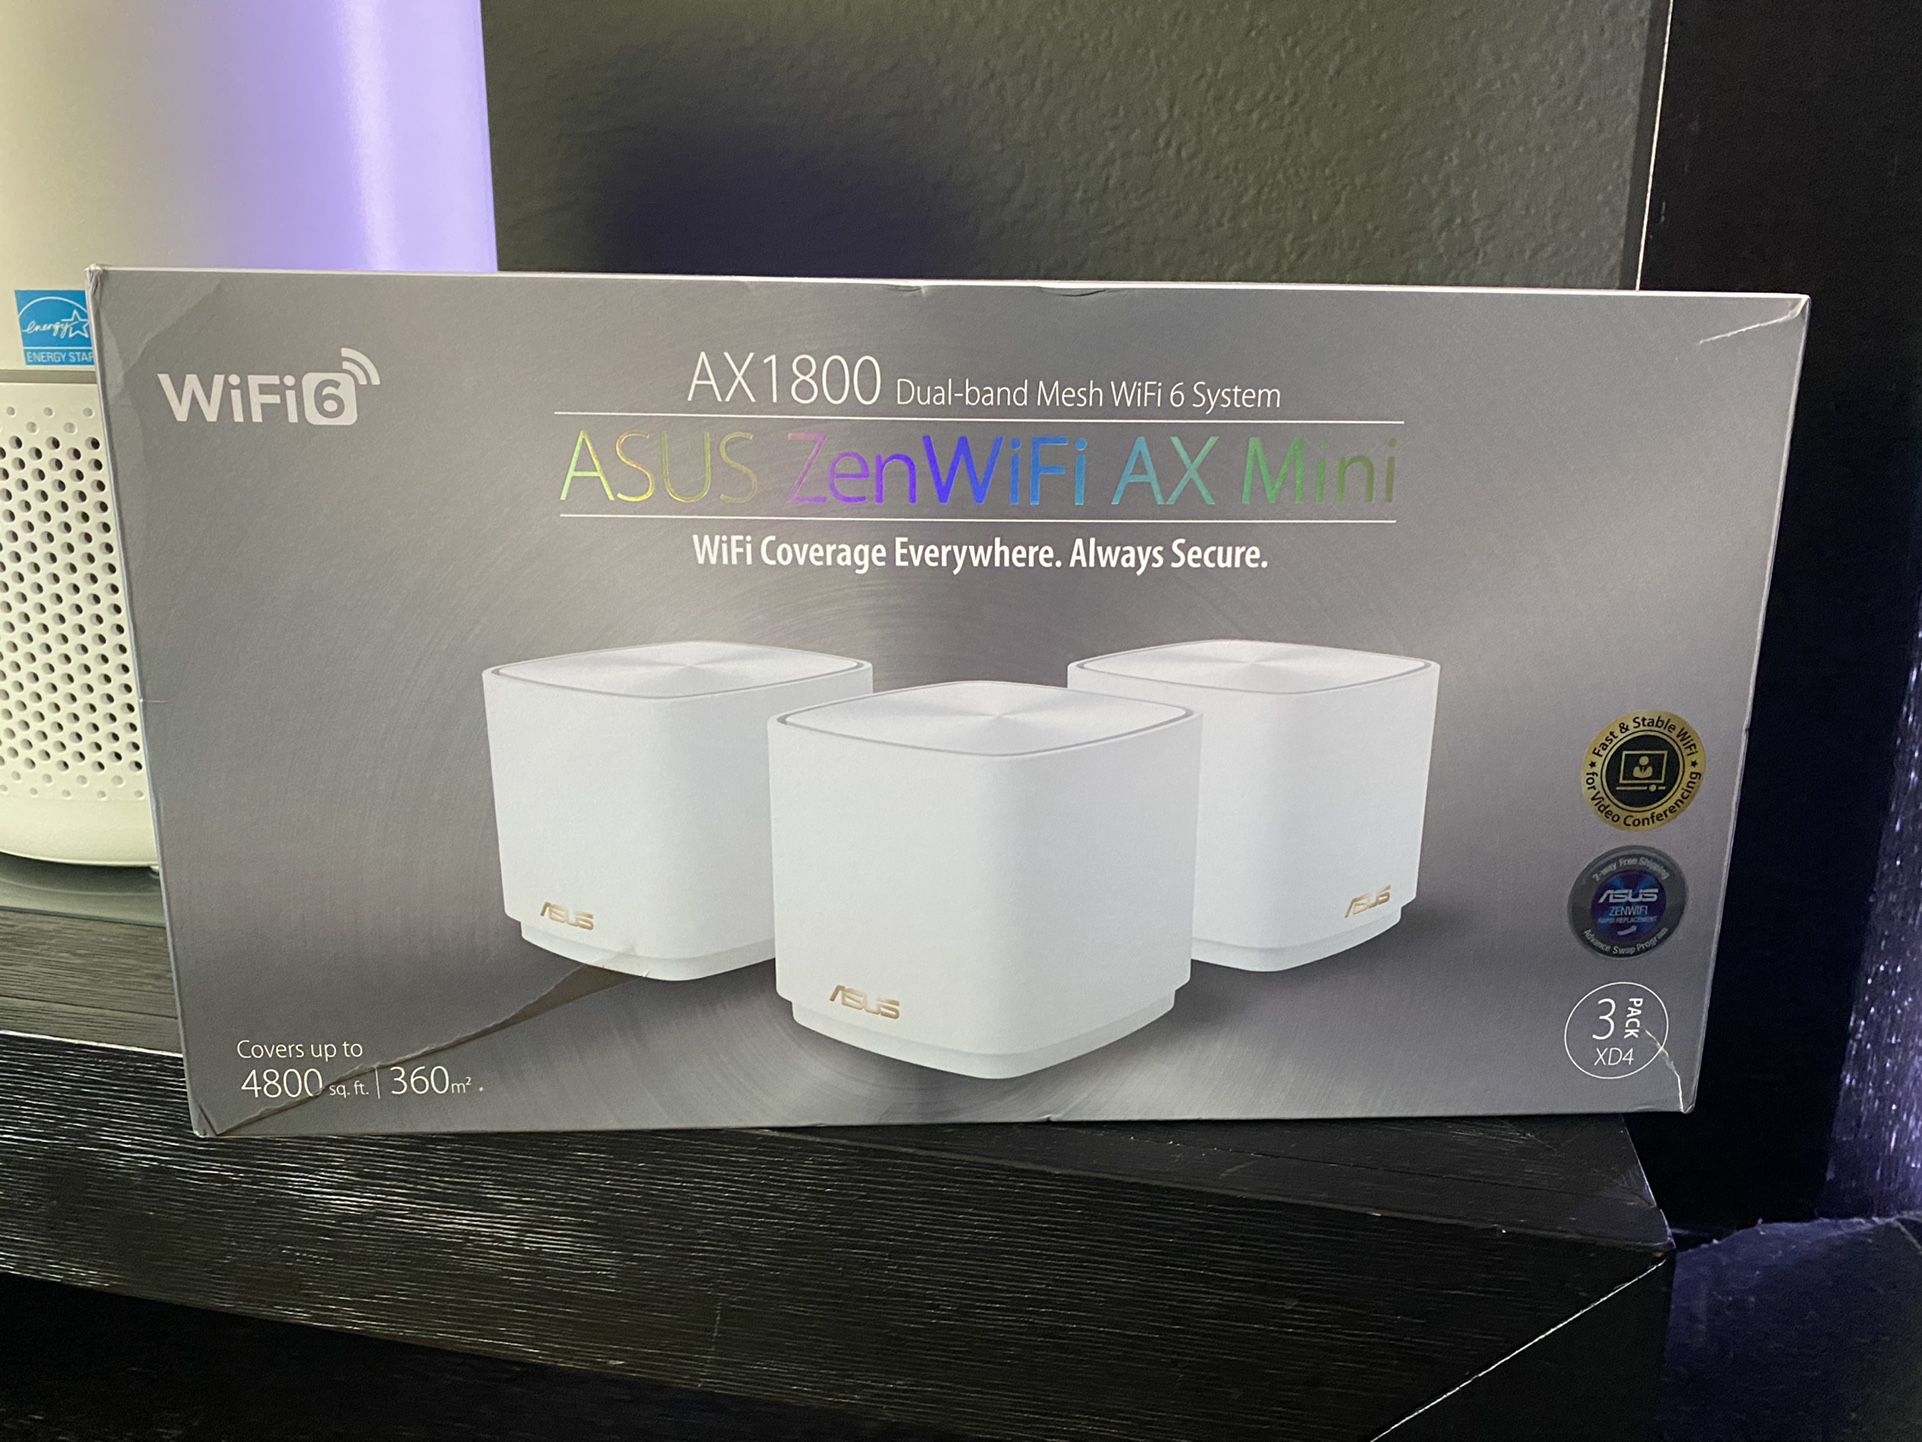 ASUS ZenWiFi AX Mini Router/Mesh